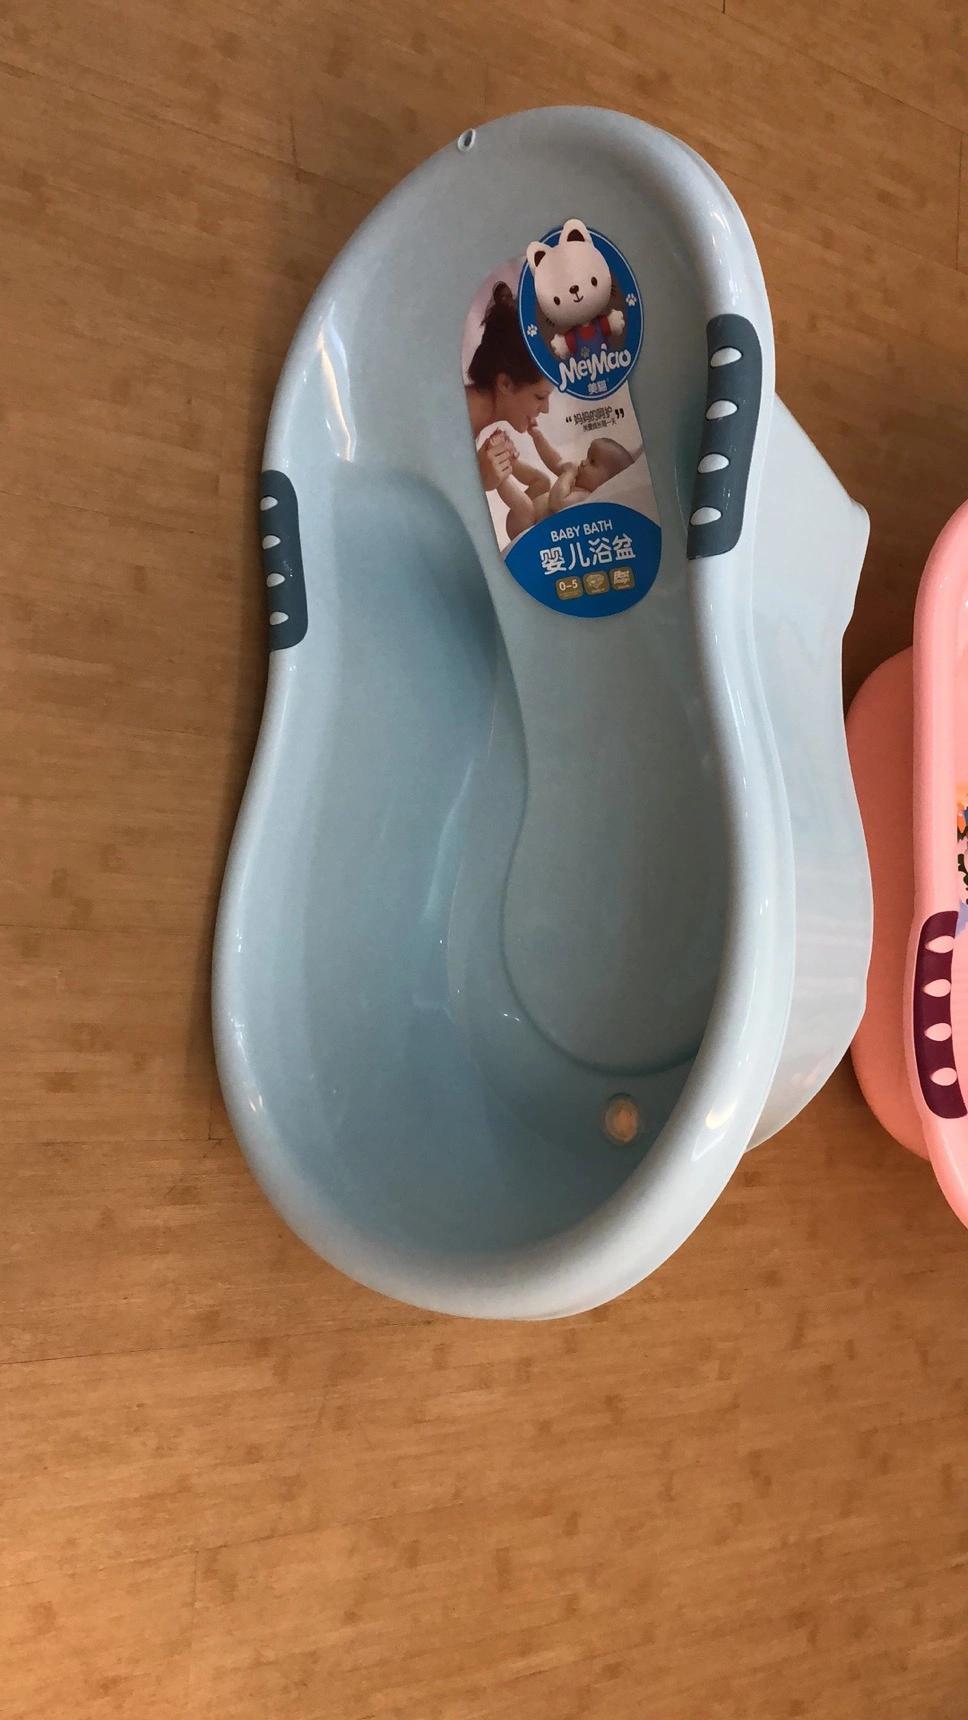 Infant Shower Bath Tub, Plastic Baby Bathtub, Baby Wash Basin